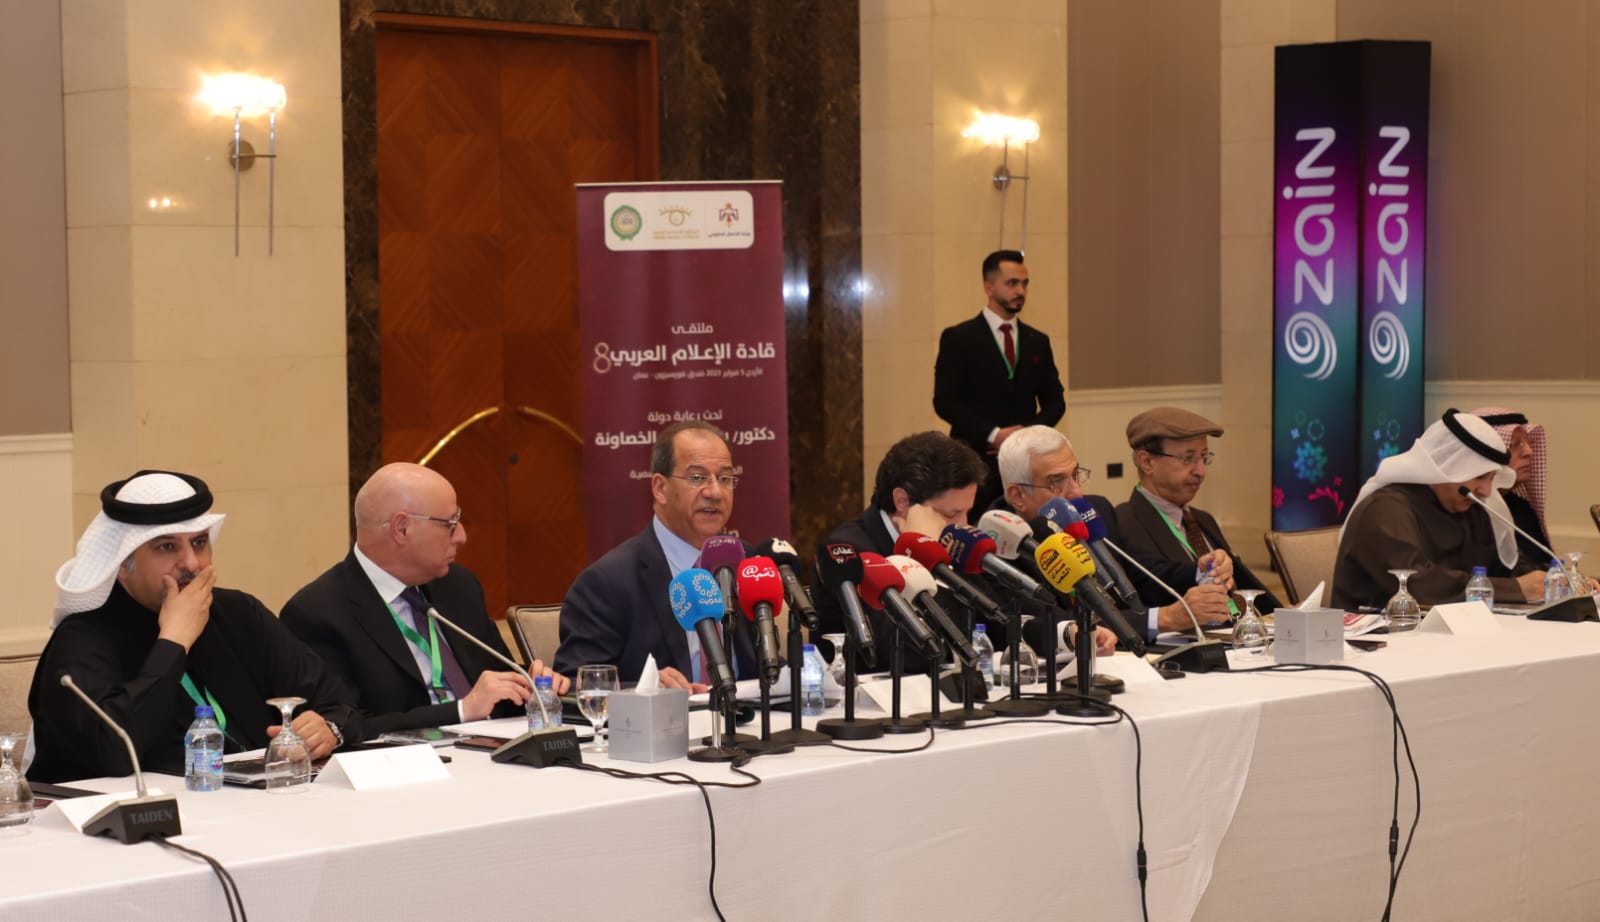 وزير الاتصال الحكومي الاردني فيصل الشبول خلال القاء كلمته في افتتاح ملتقى الإعلام العربي في دورته ال8